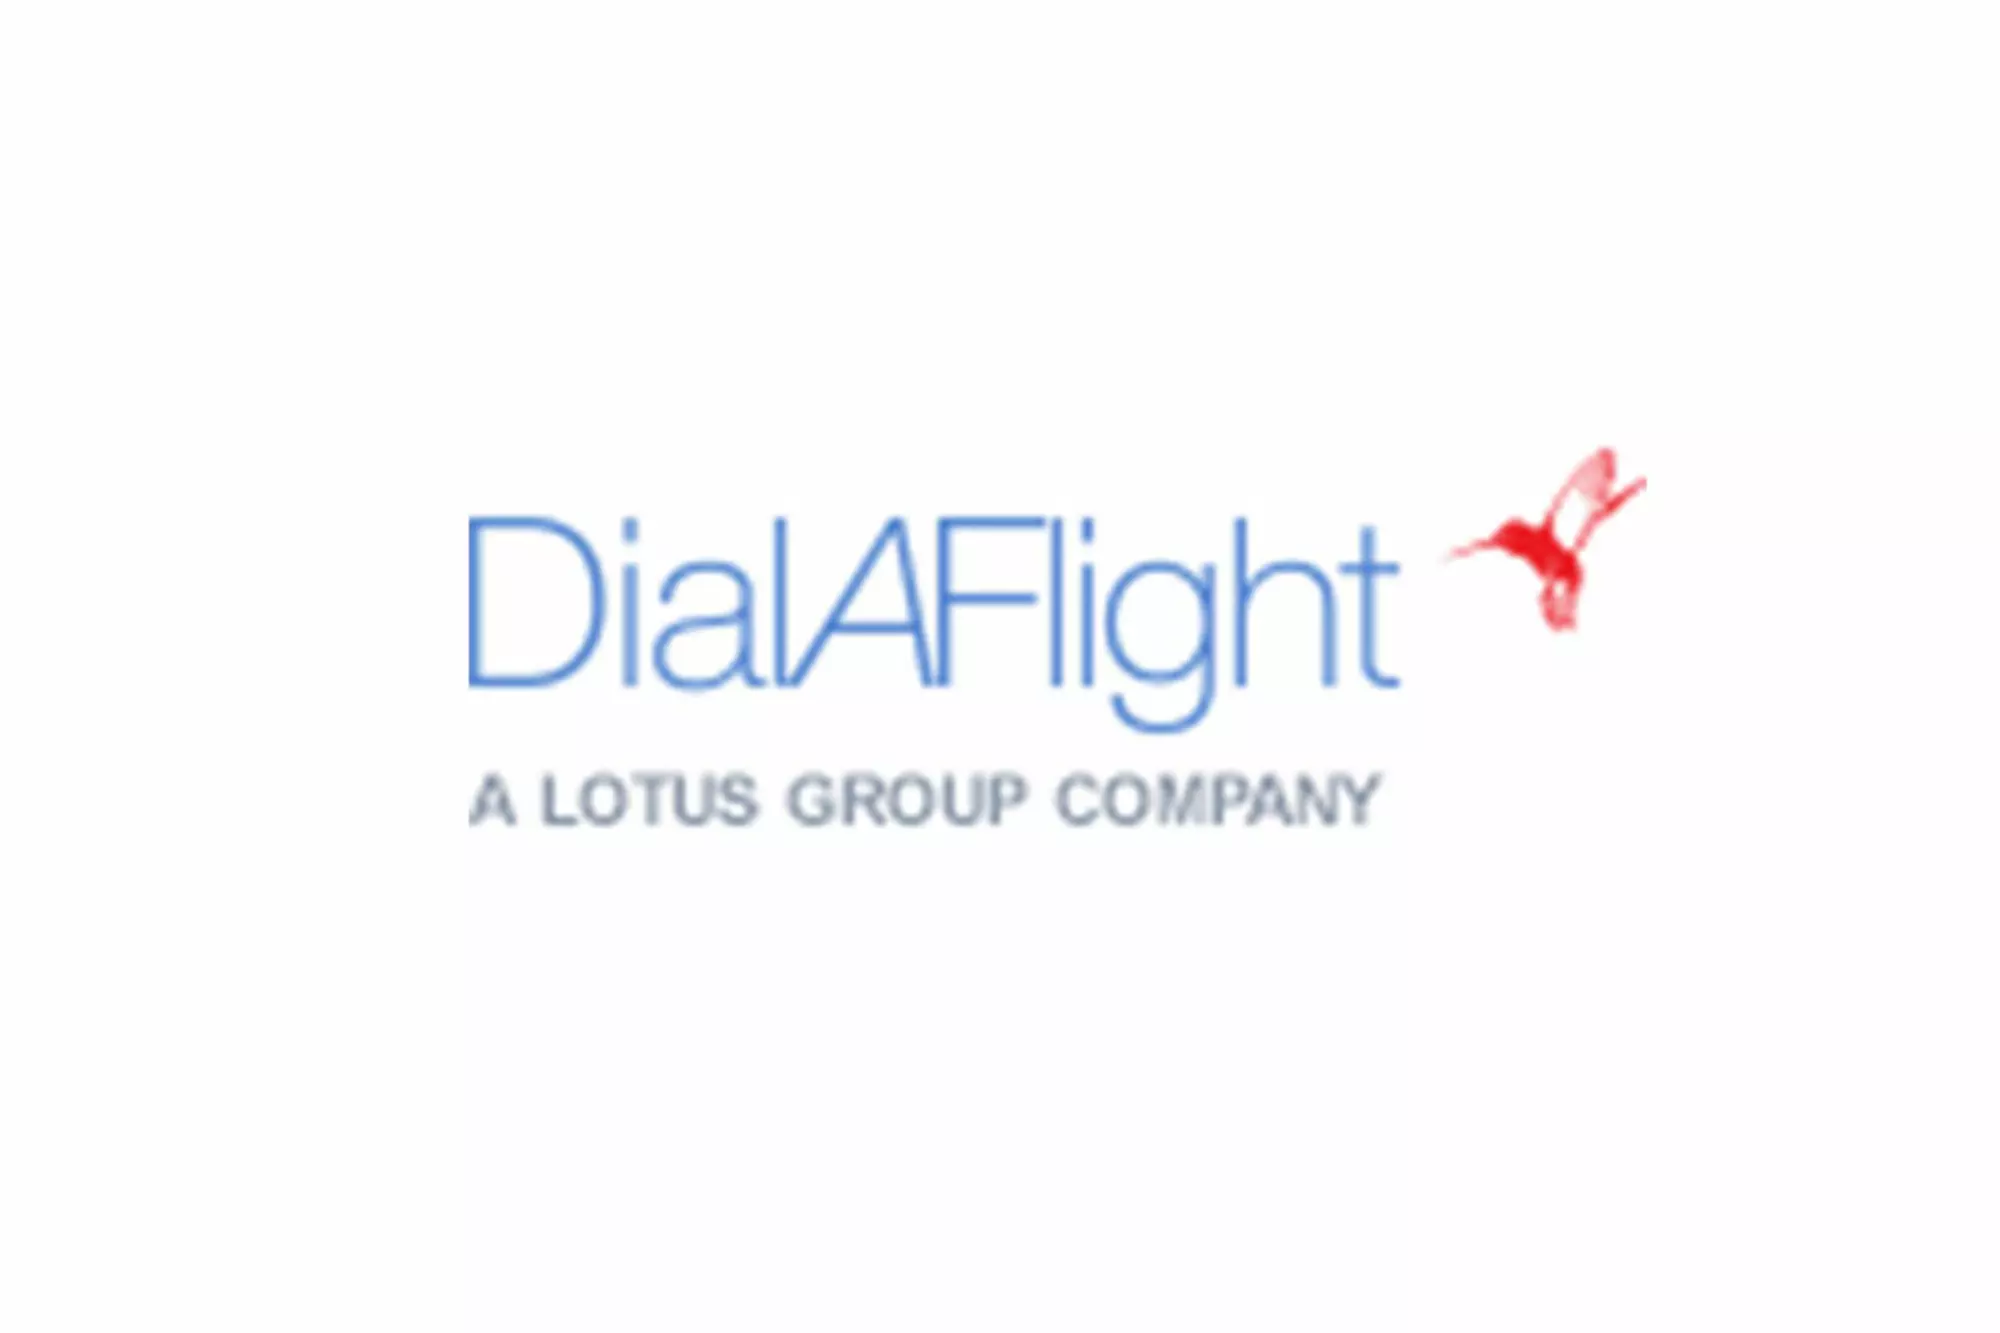 dialaflight logo